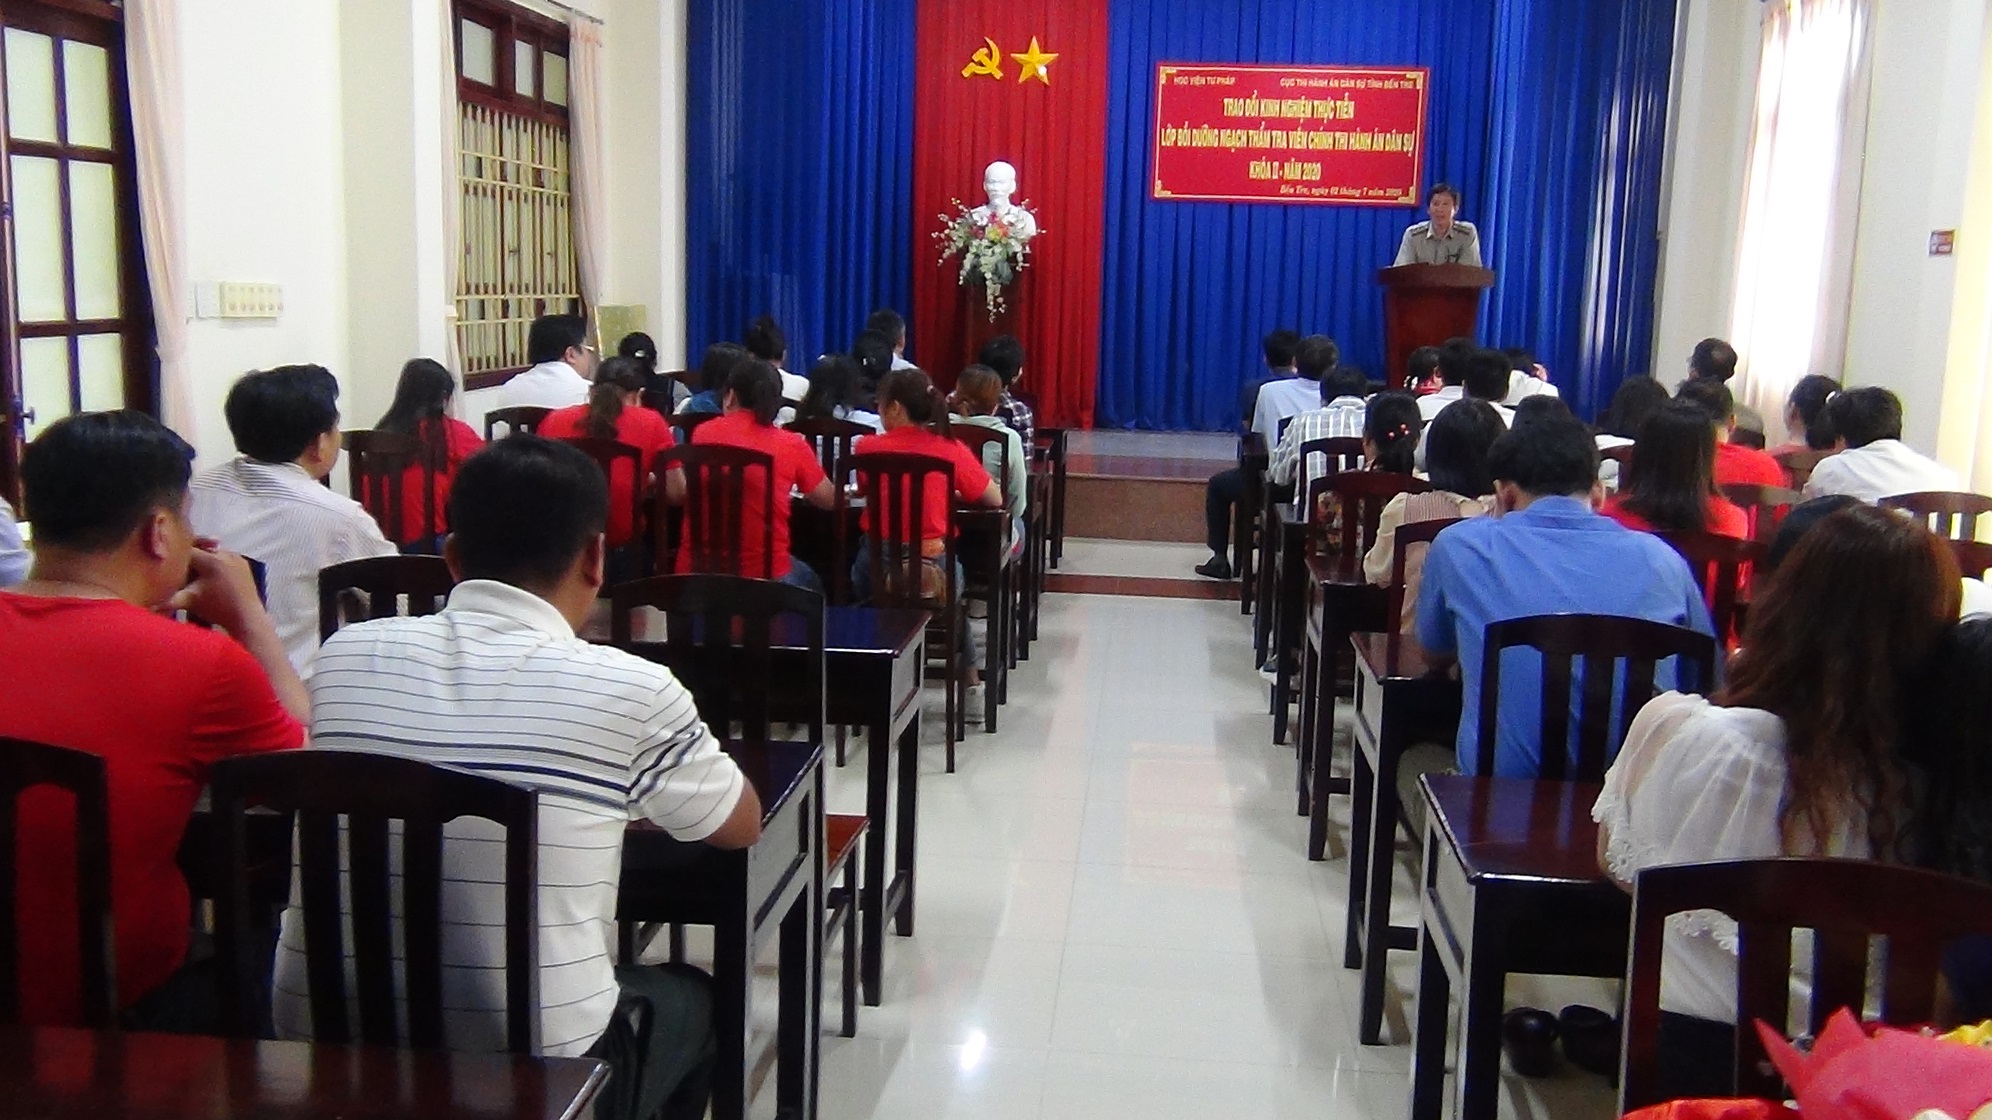 Học viên lớp bồi dưỡng ngạch thẩm tra viên chính Học viện Tư pháp tại thành phố Hồ Chí Minh và Cục Thi hành án dân sự tỉnh Bến Tre tổ chức giao lưu, trao đổi kinh nghiệm thực tiễn